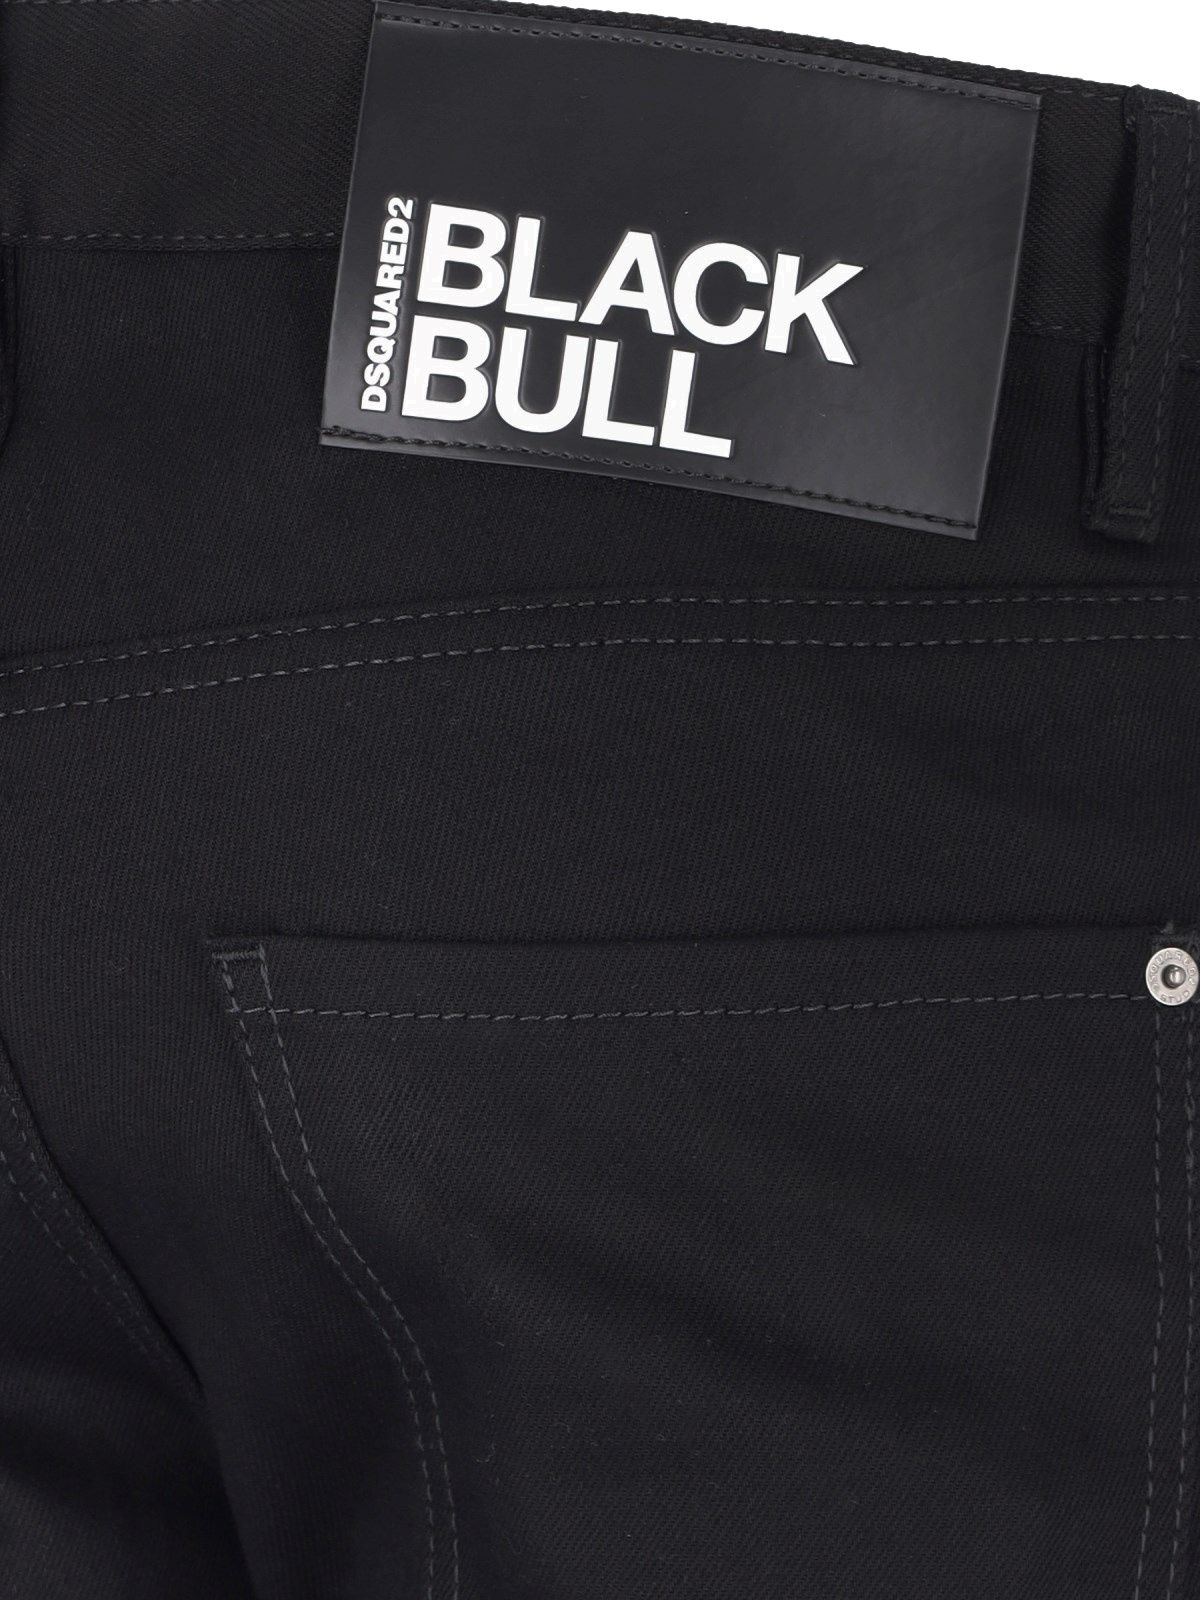 Jeans "Black Bull"